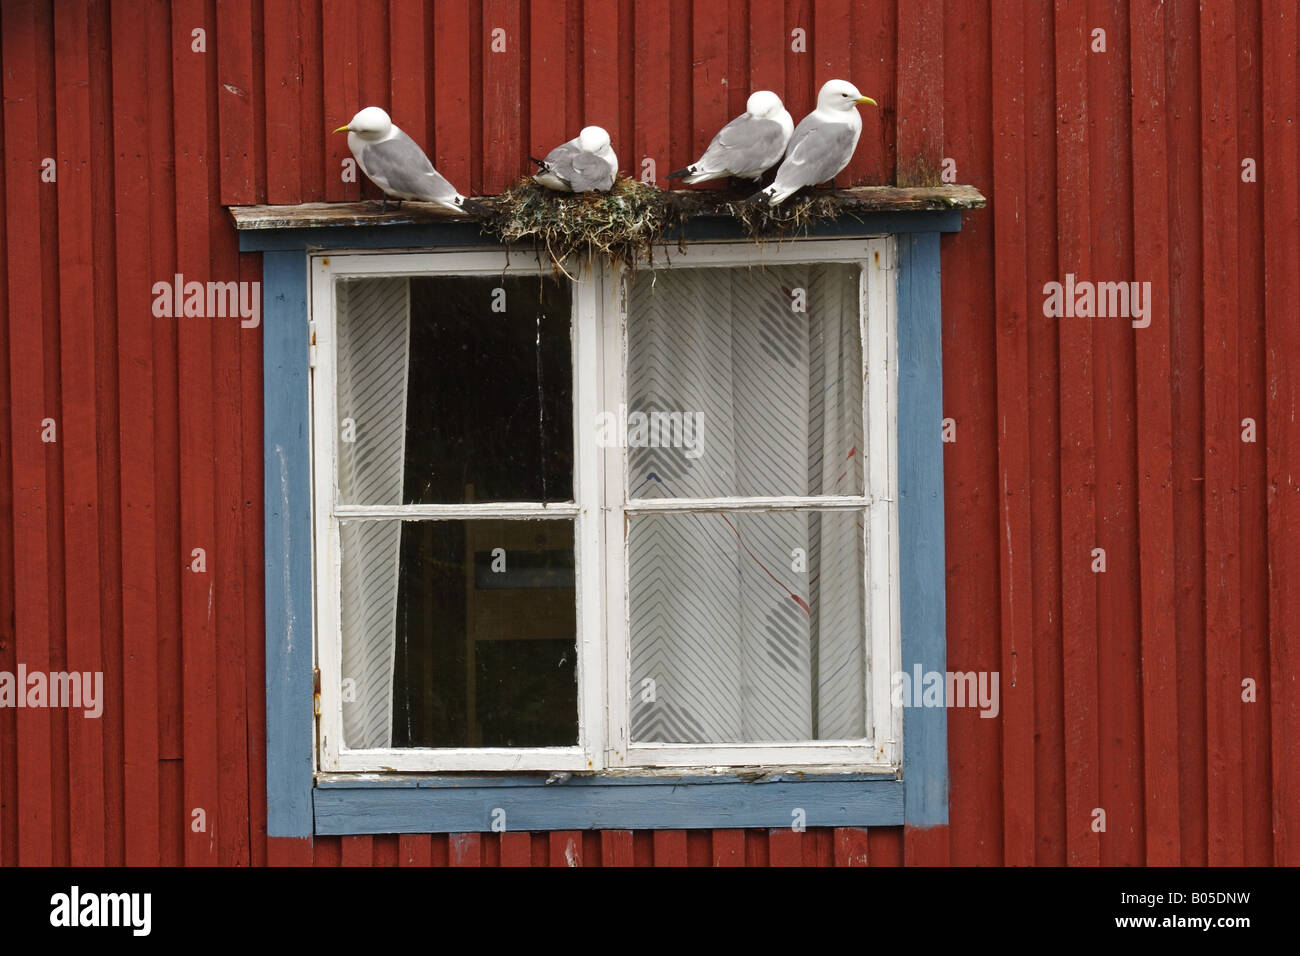 Goéland argenté (Larus argentatus), des goélands nichant sur fenêtre, Norvège, îles Lofoten Banque D'Images